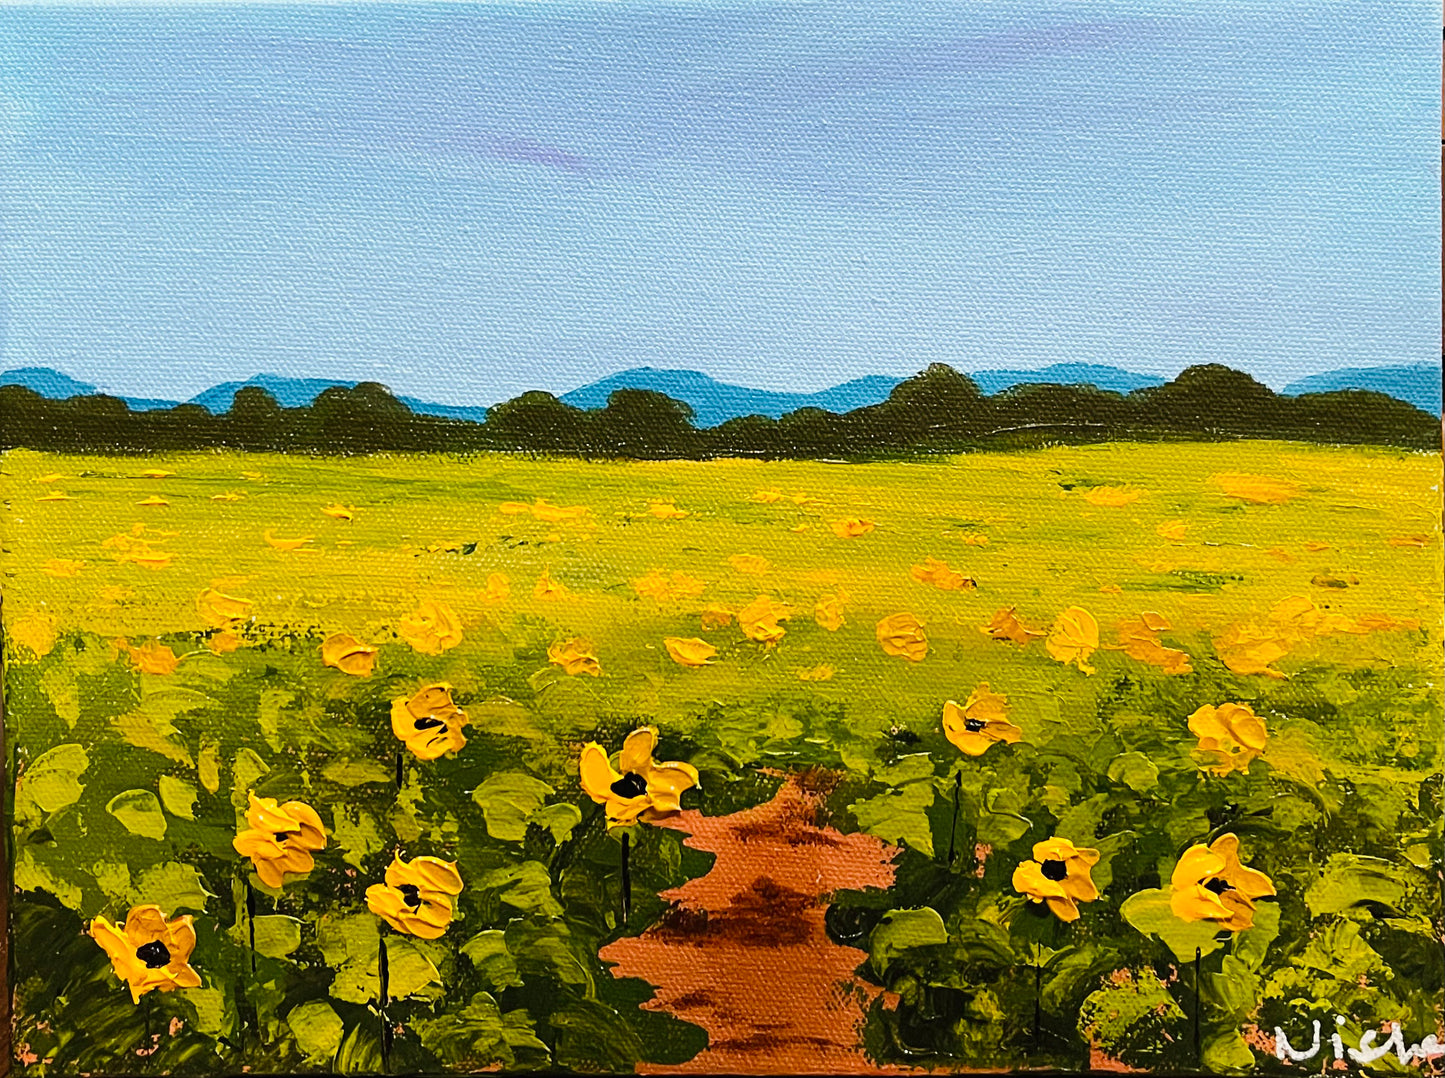 Sunflower field - Fields of Gold